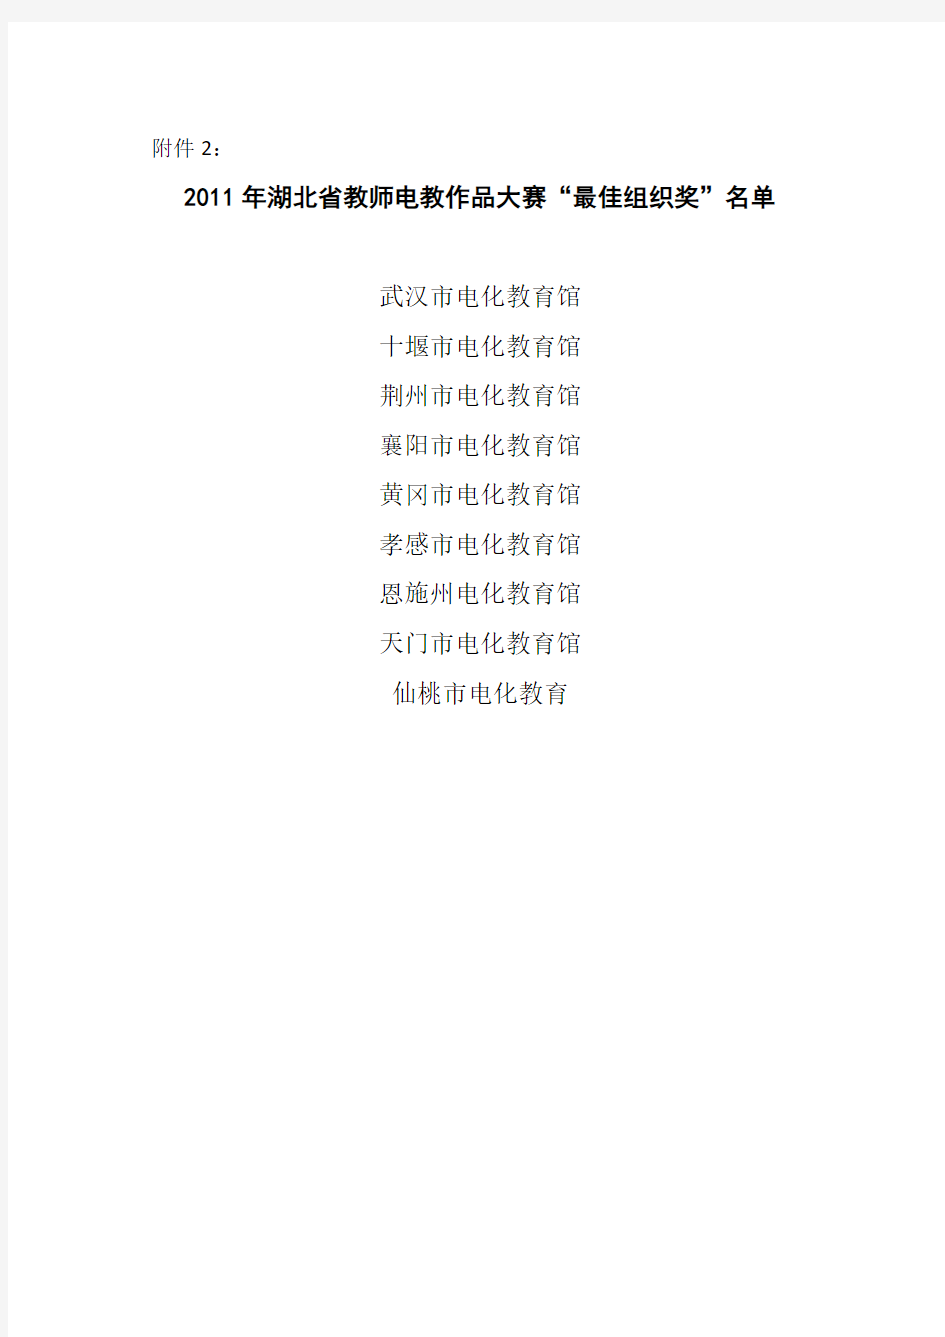 2011年湖北省教师电教作品大赛“最佳组织奖”名单